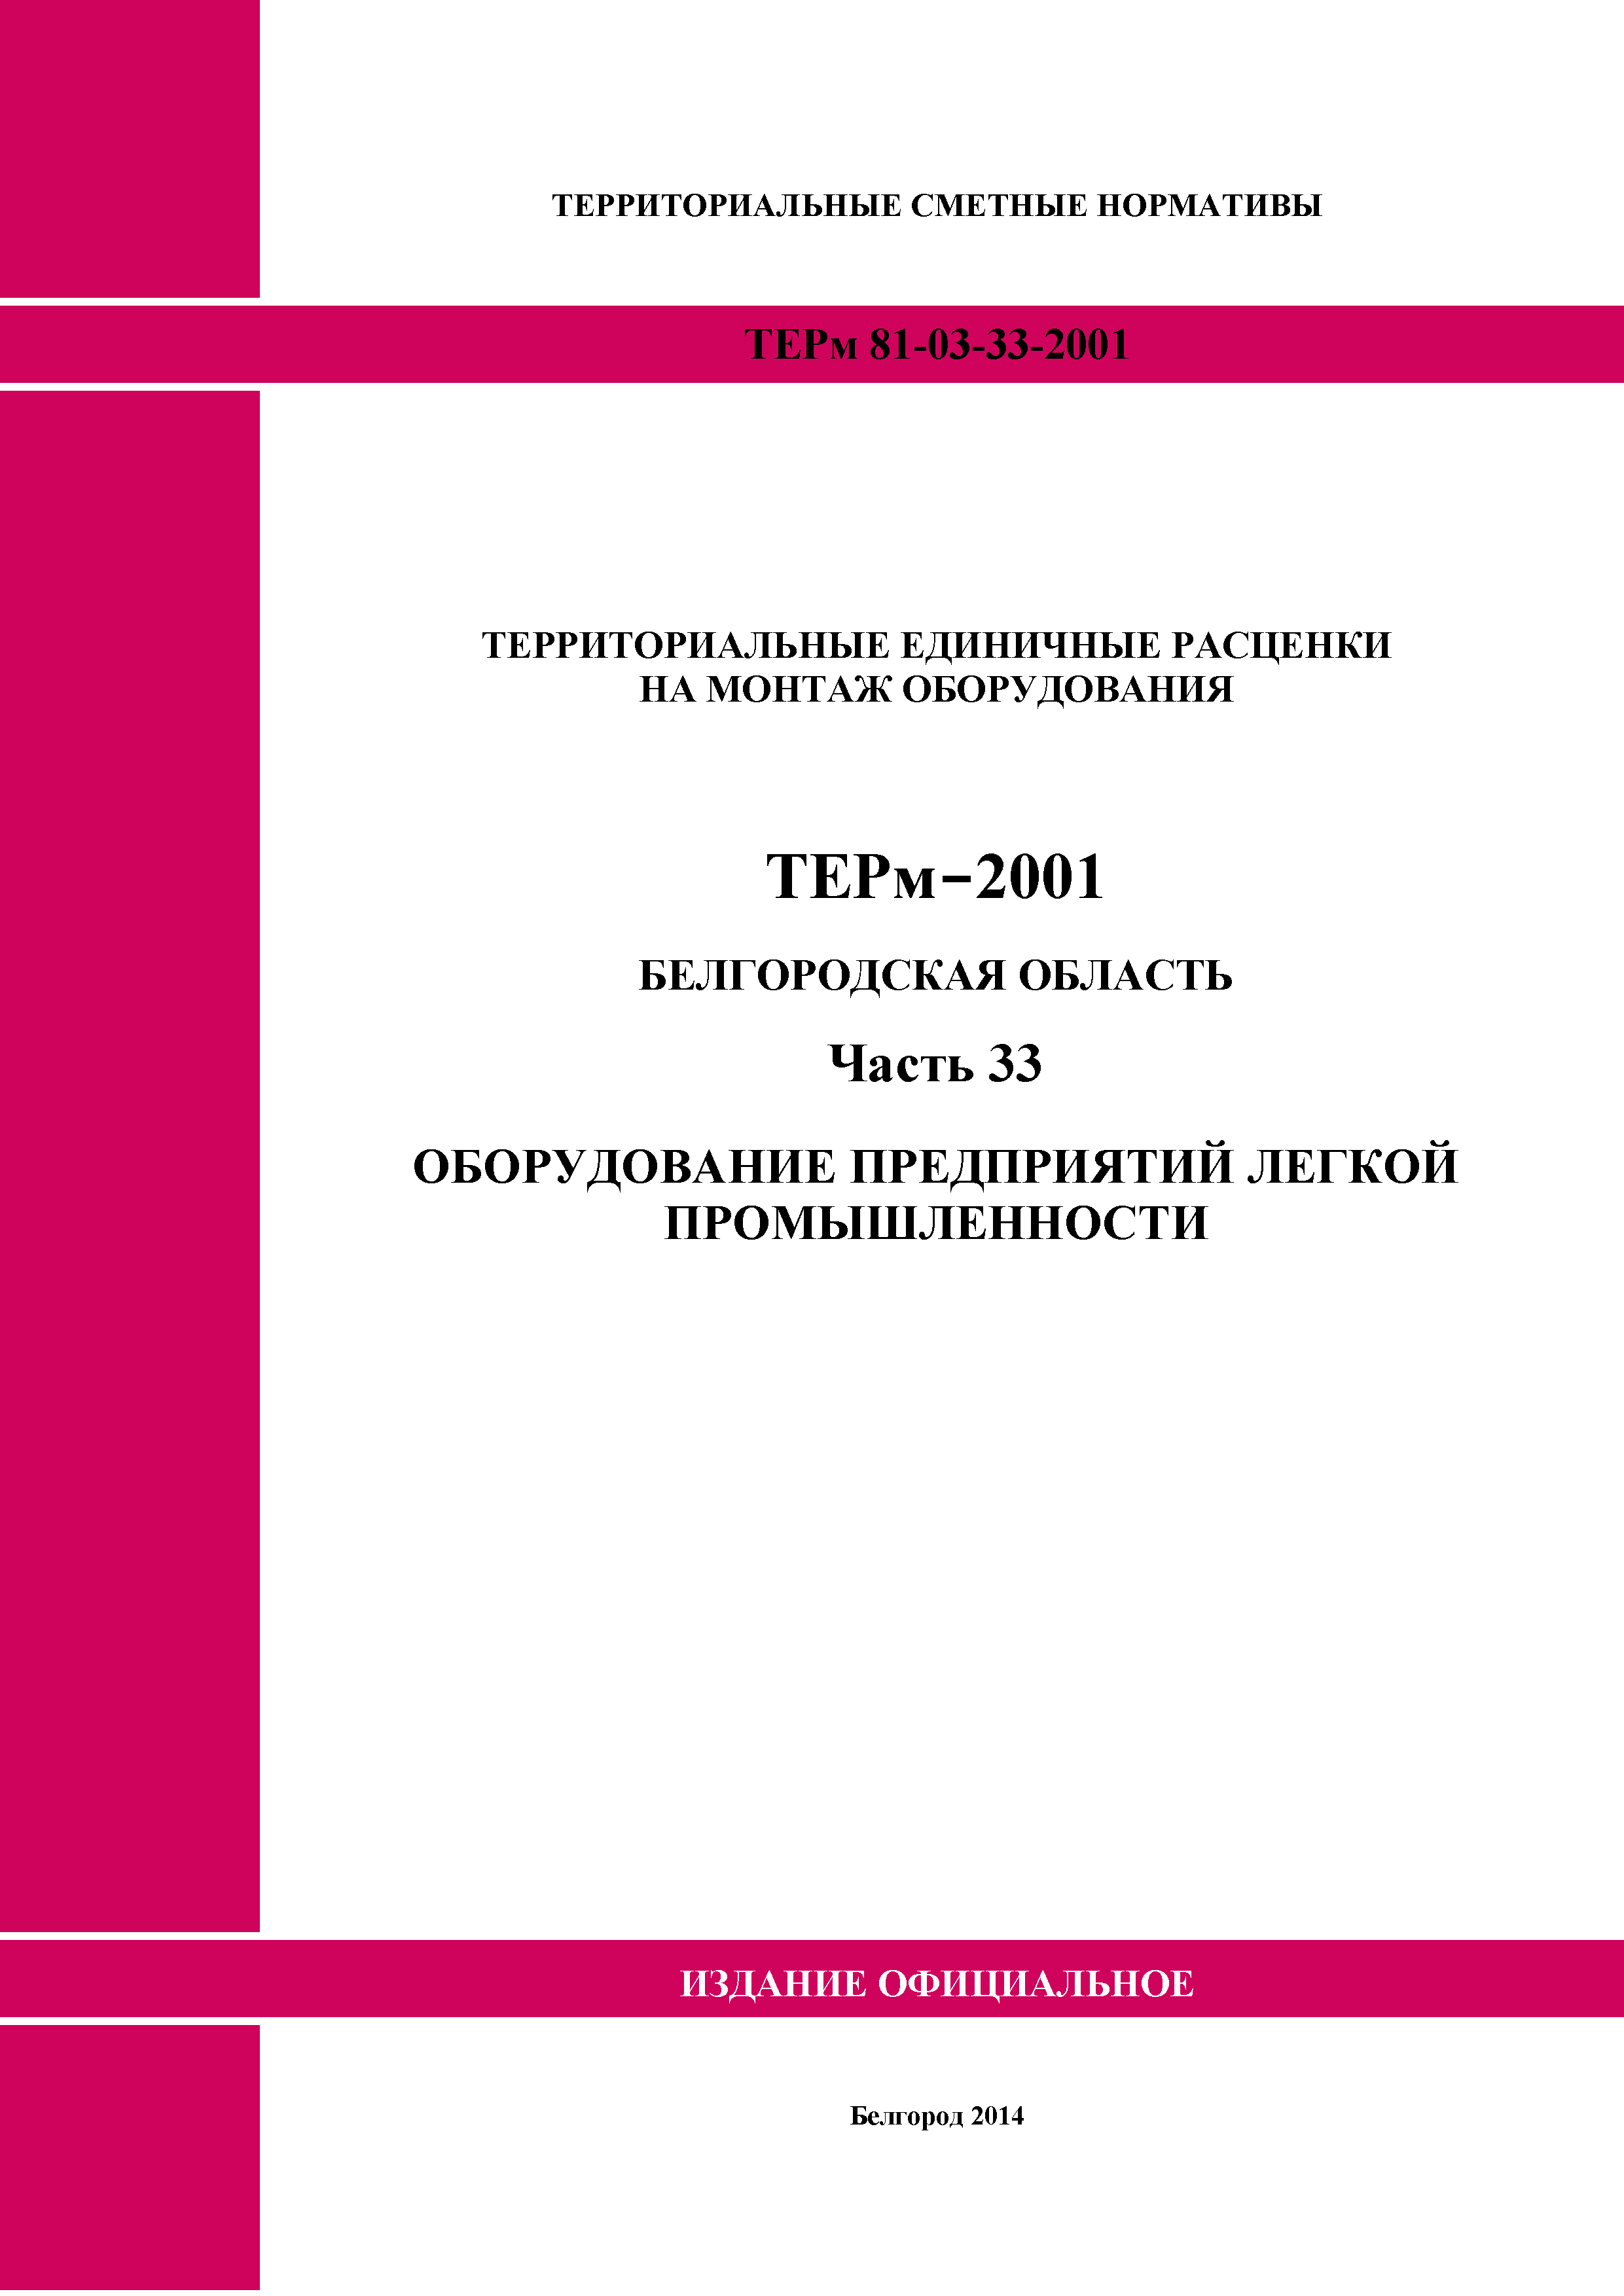 ТЕРм Белгородская область 81-03-33-2001